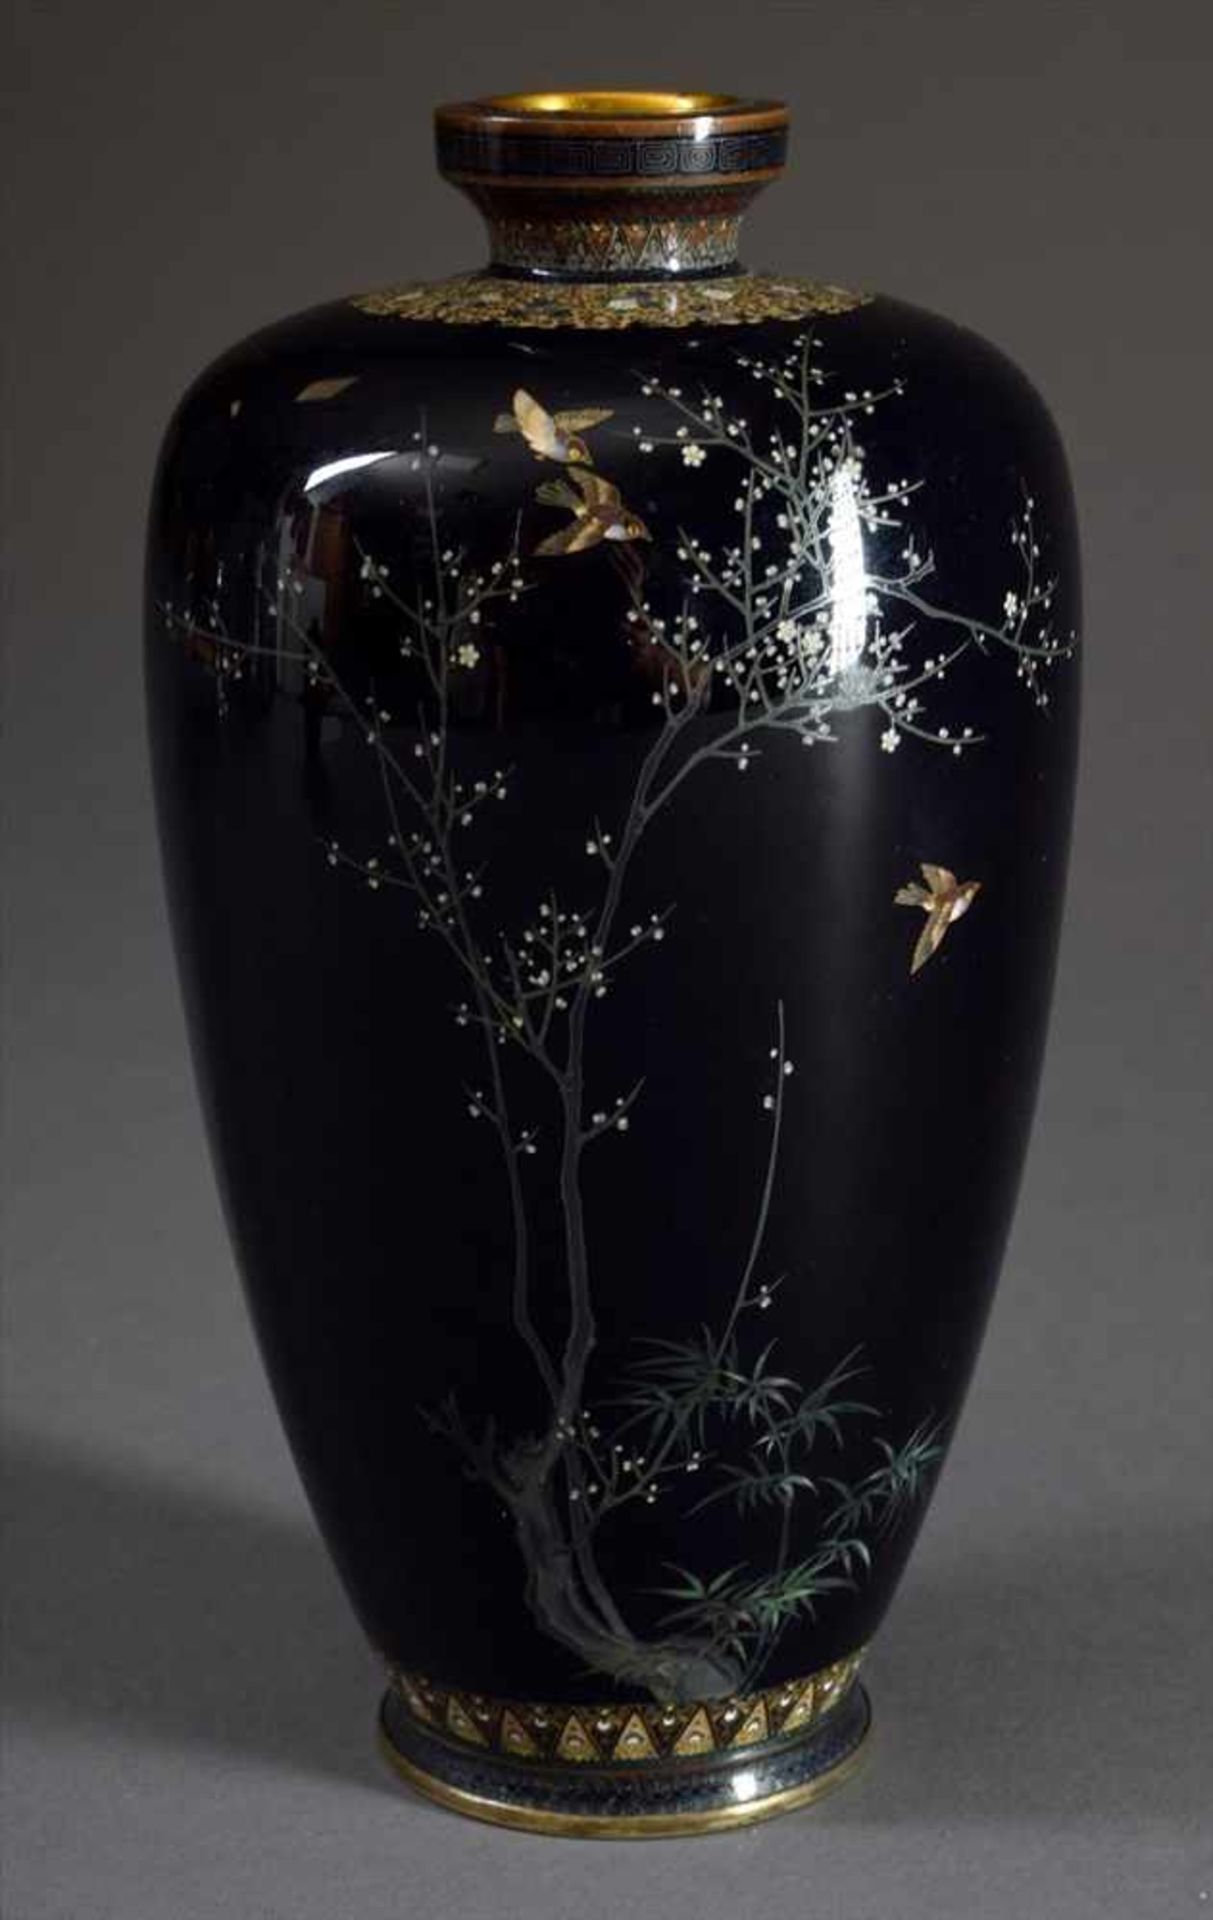 Bauchige Cloisonné Vase mit lupenfeiner Dekoration "Sperlinge, Bambus- und Prunuszweige" auf